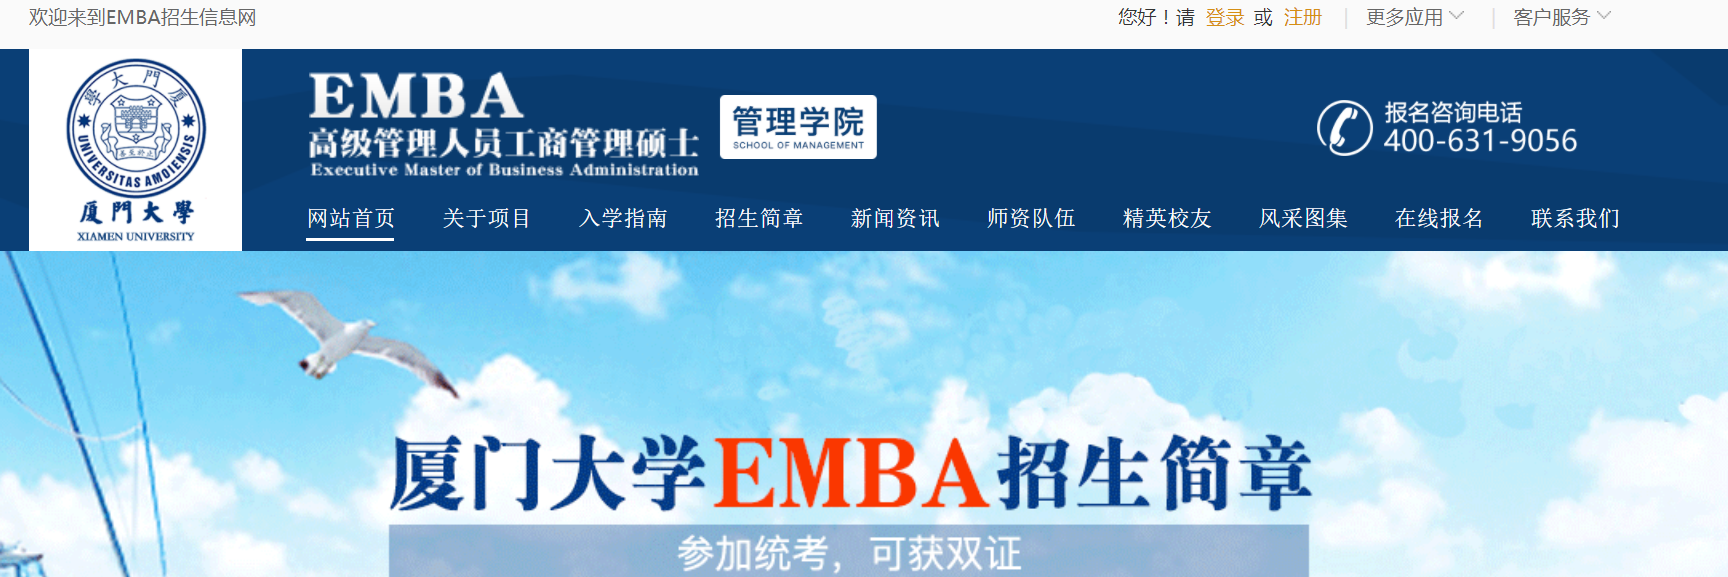 厦门大学EMBA中心网站